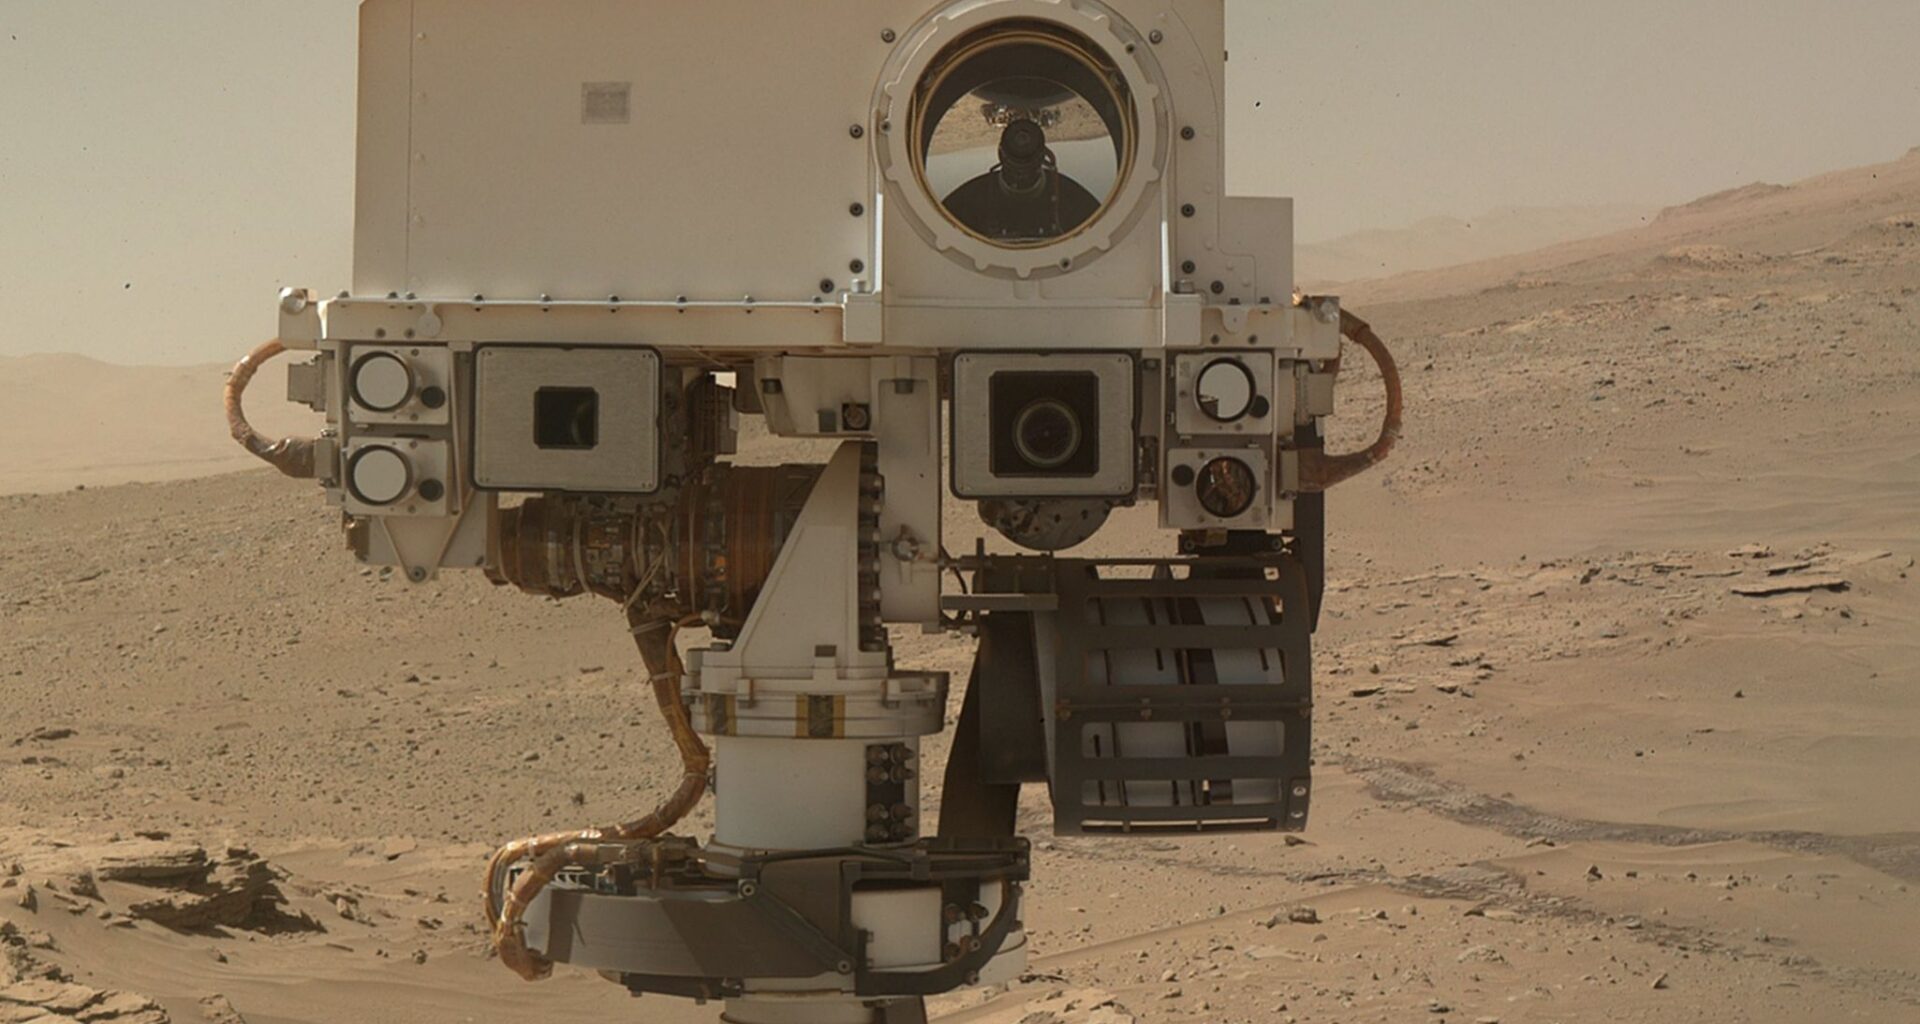 ¿Posible señal de vida en Marte? Curiosity encuentra materia orgánica en el Planeta Rojo